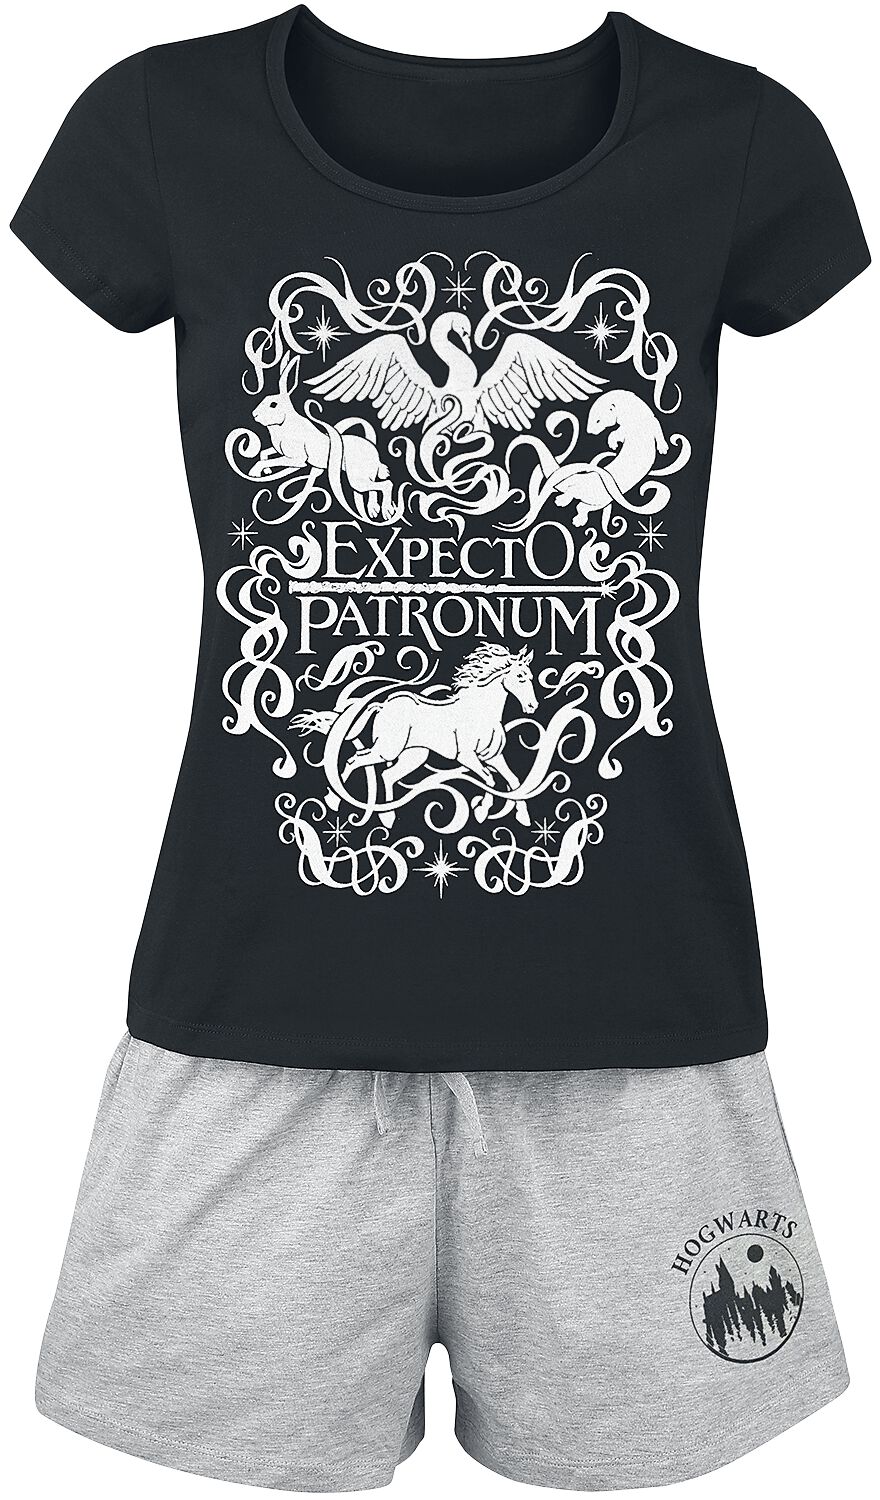 Pyjama de Harry Potter - Expecto Patronum - S à XXL - pour Femme - noir/gris